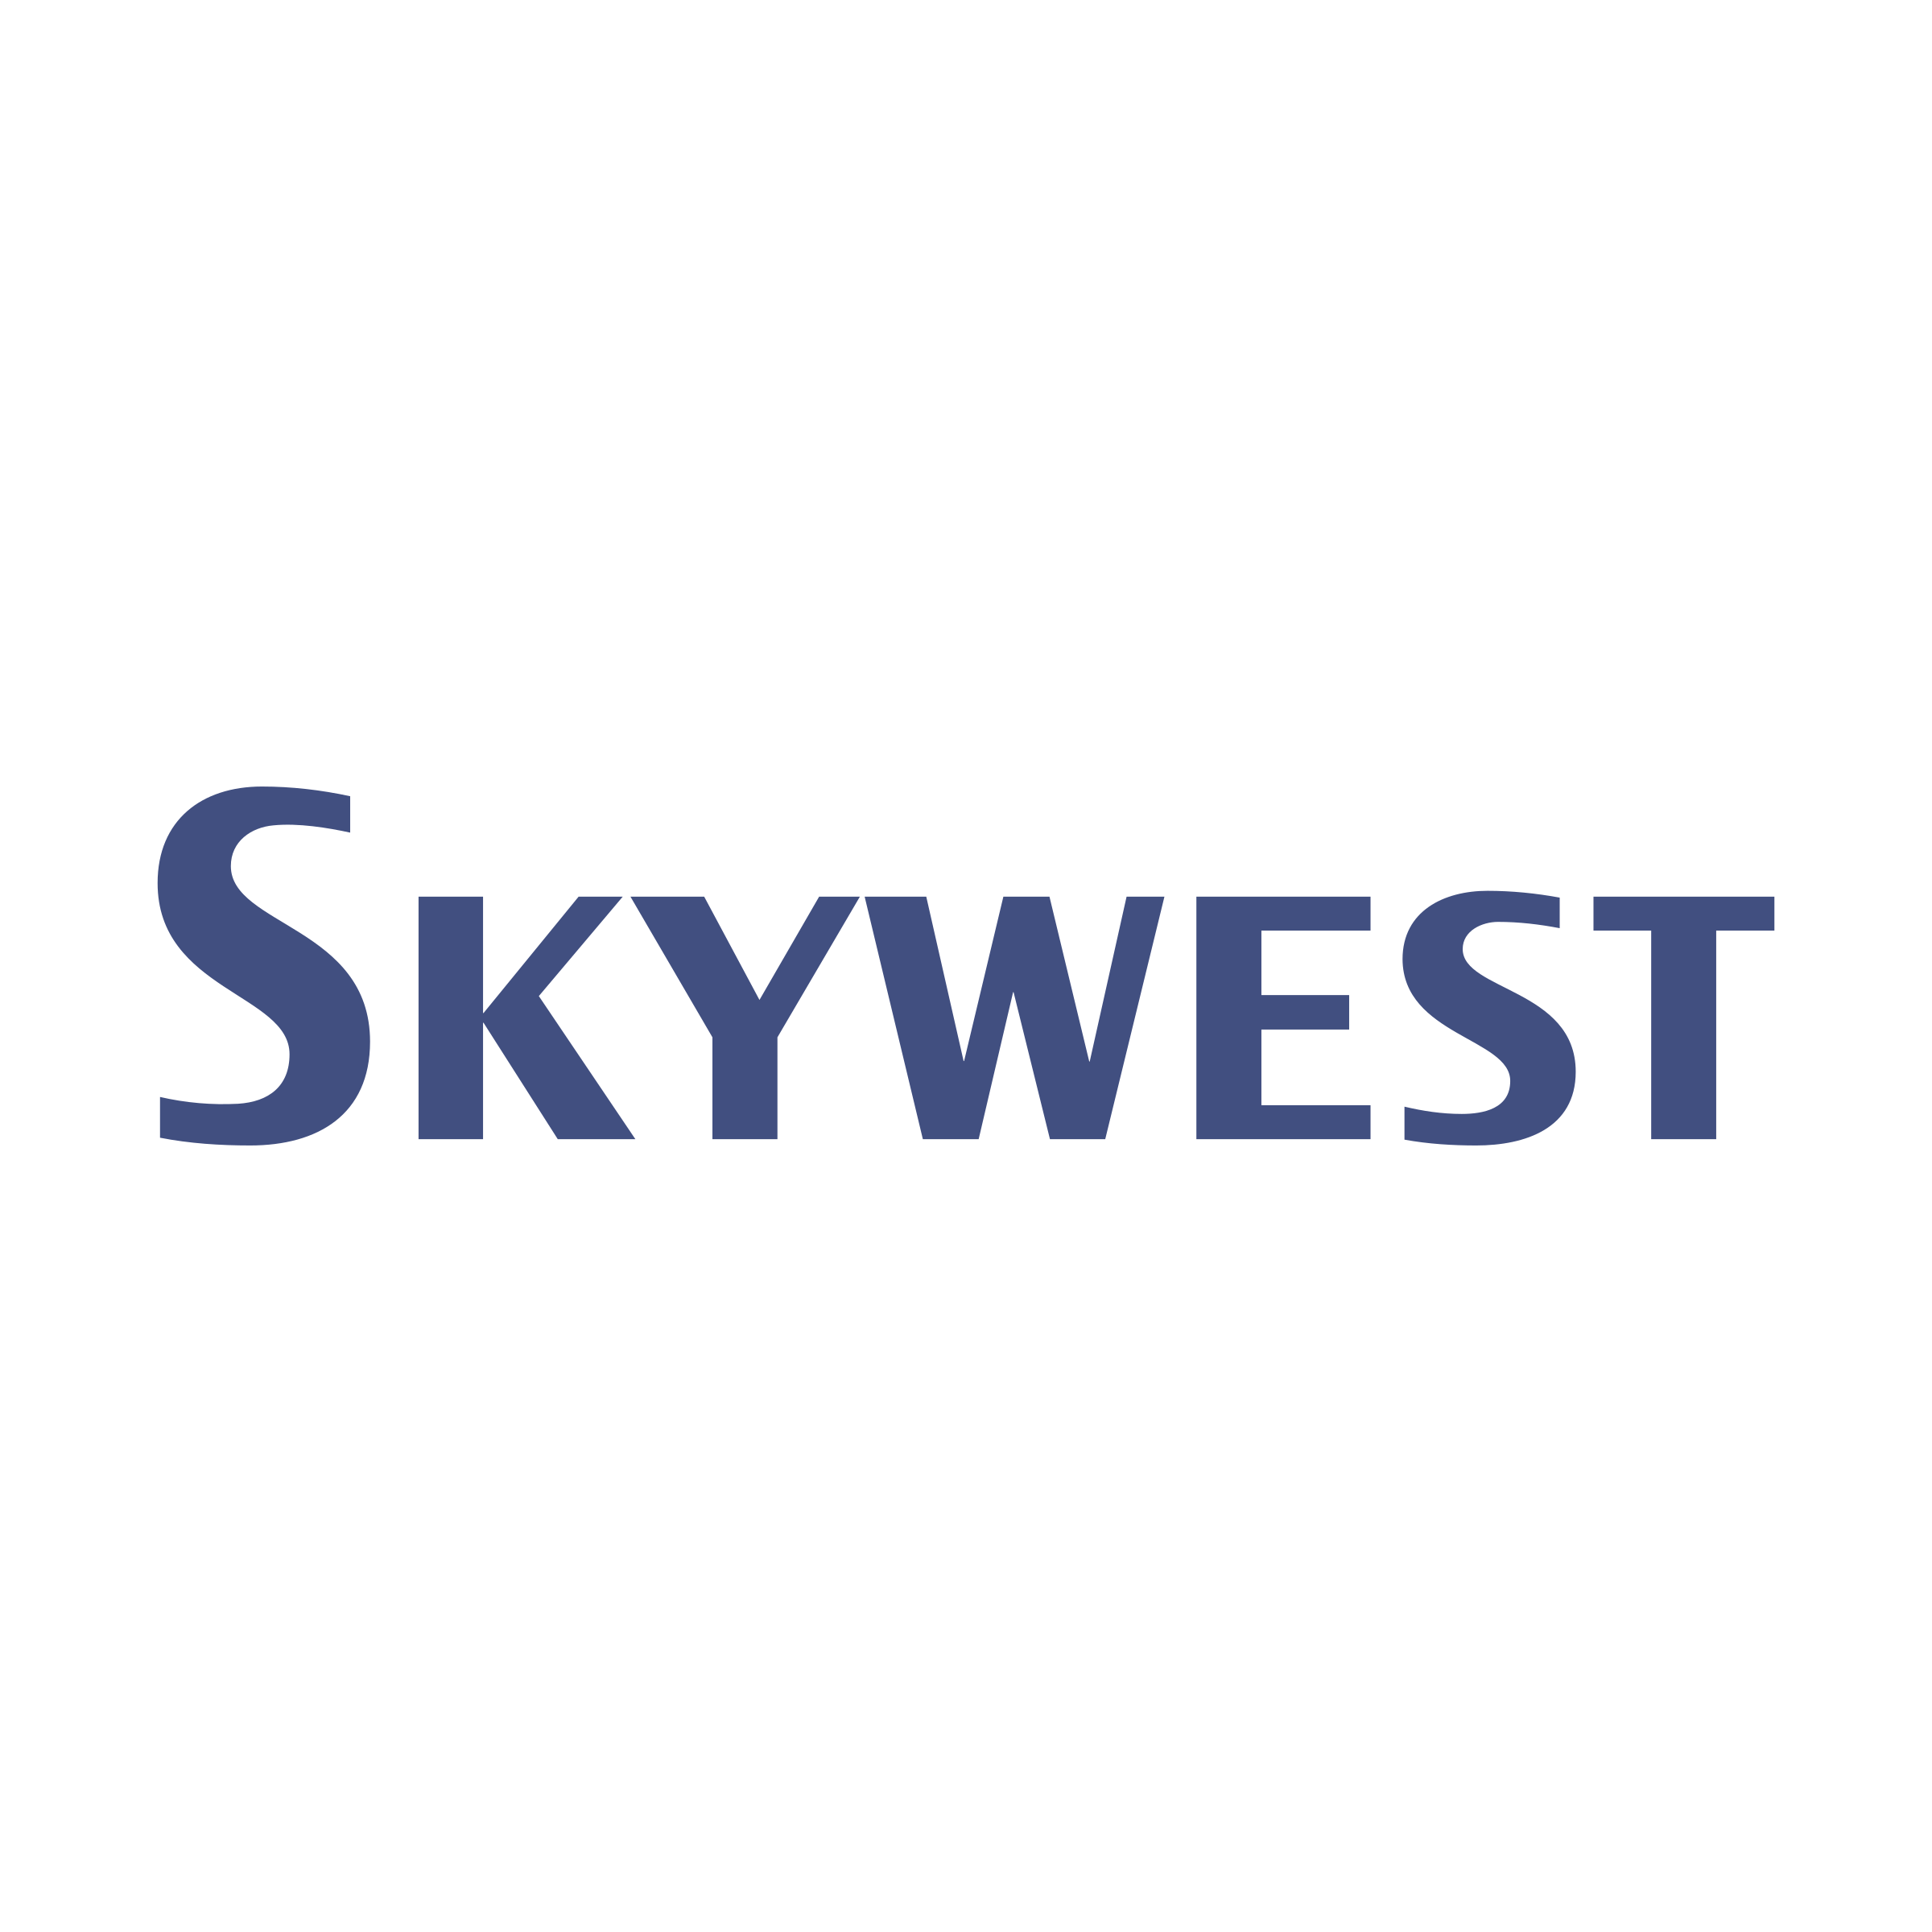 SkyWest Logo - SkyWest Airlines Logo PNG Transparent & SVG Vector